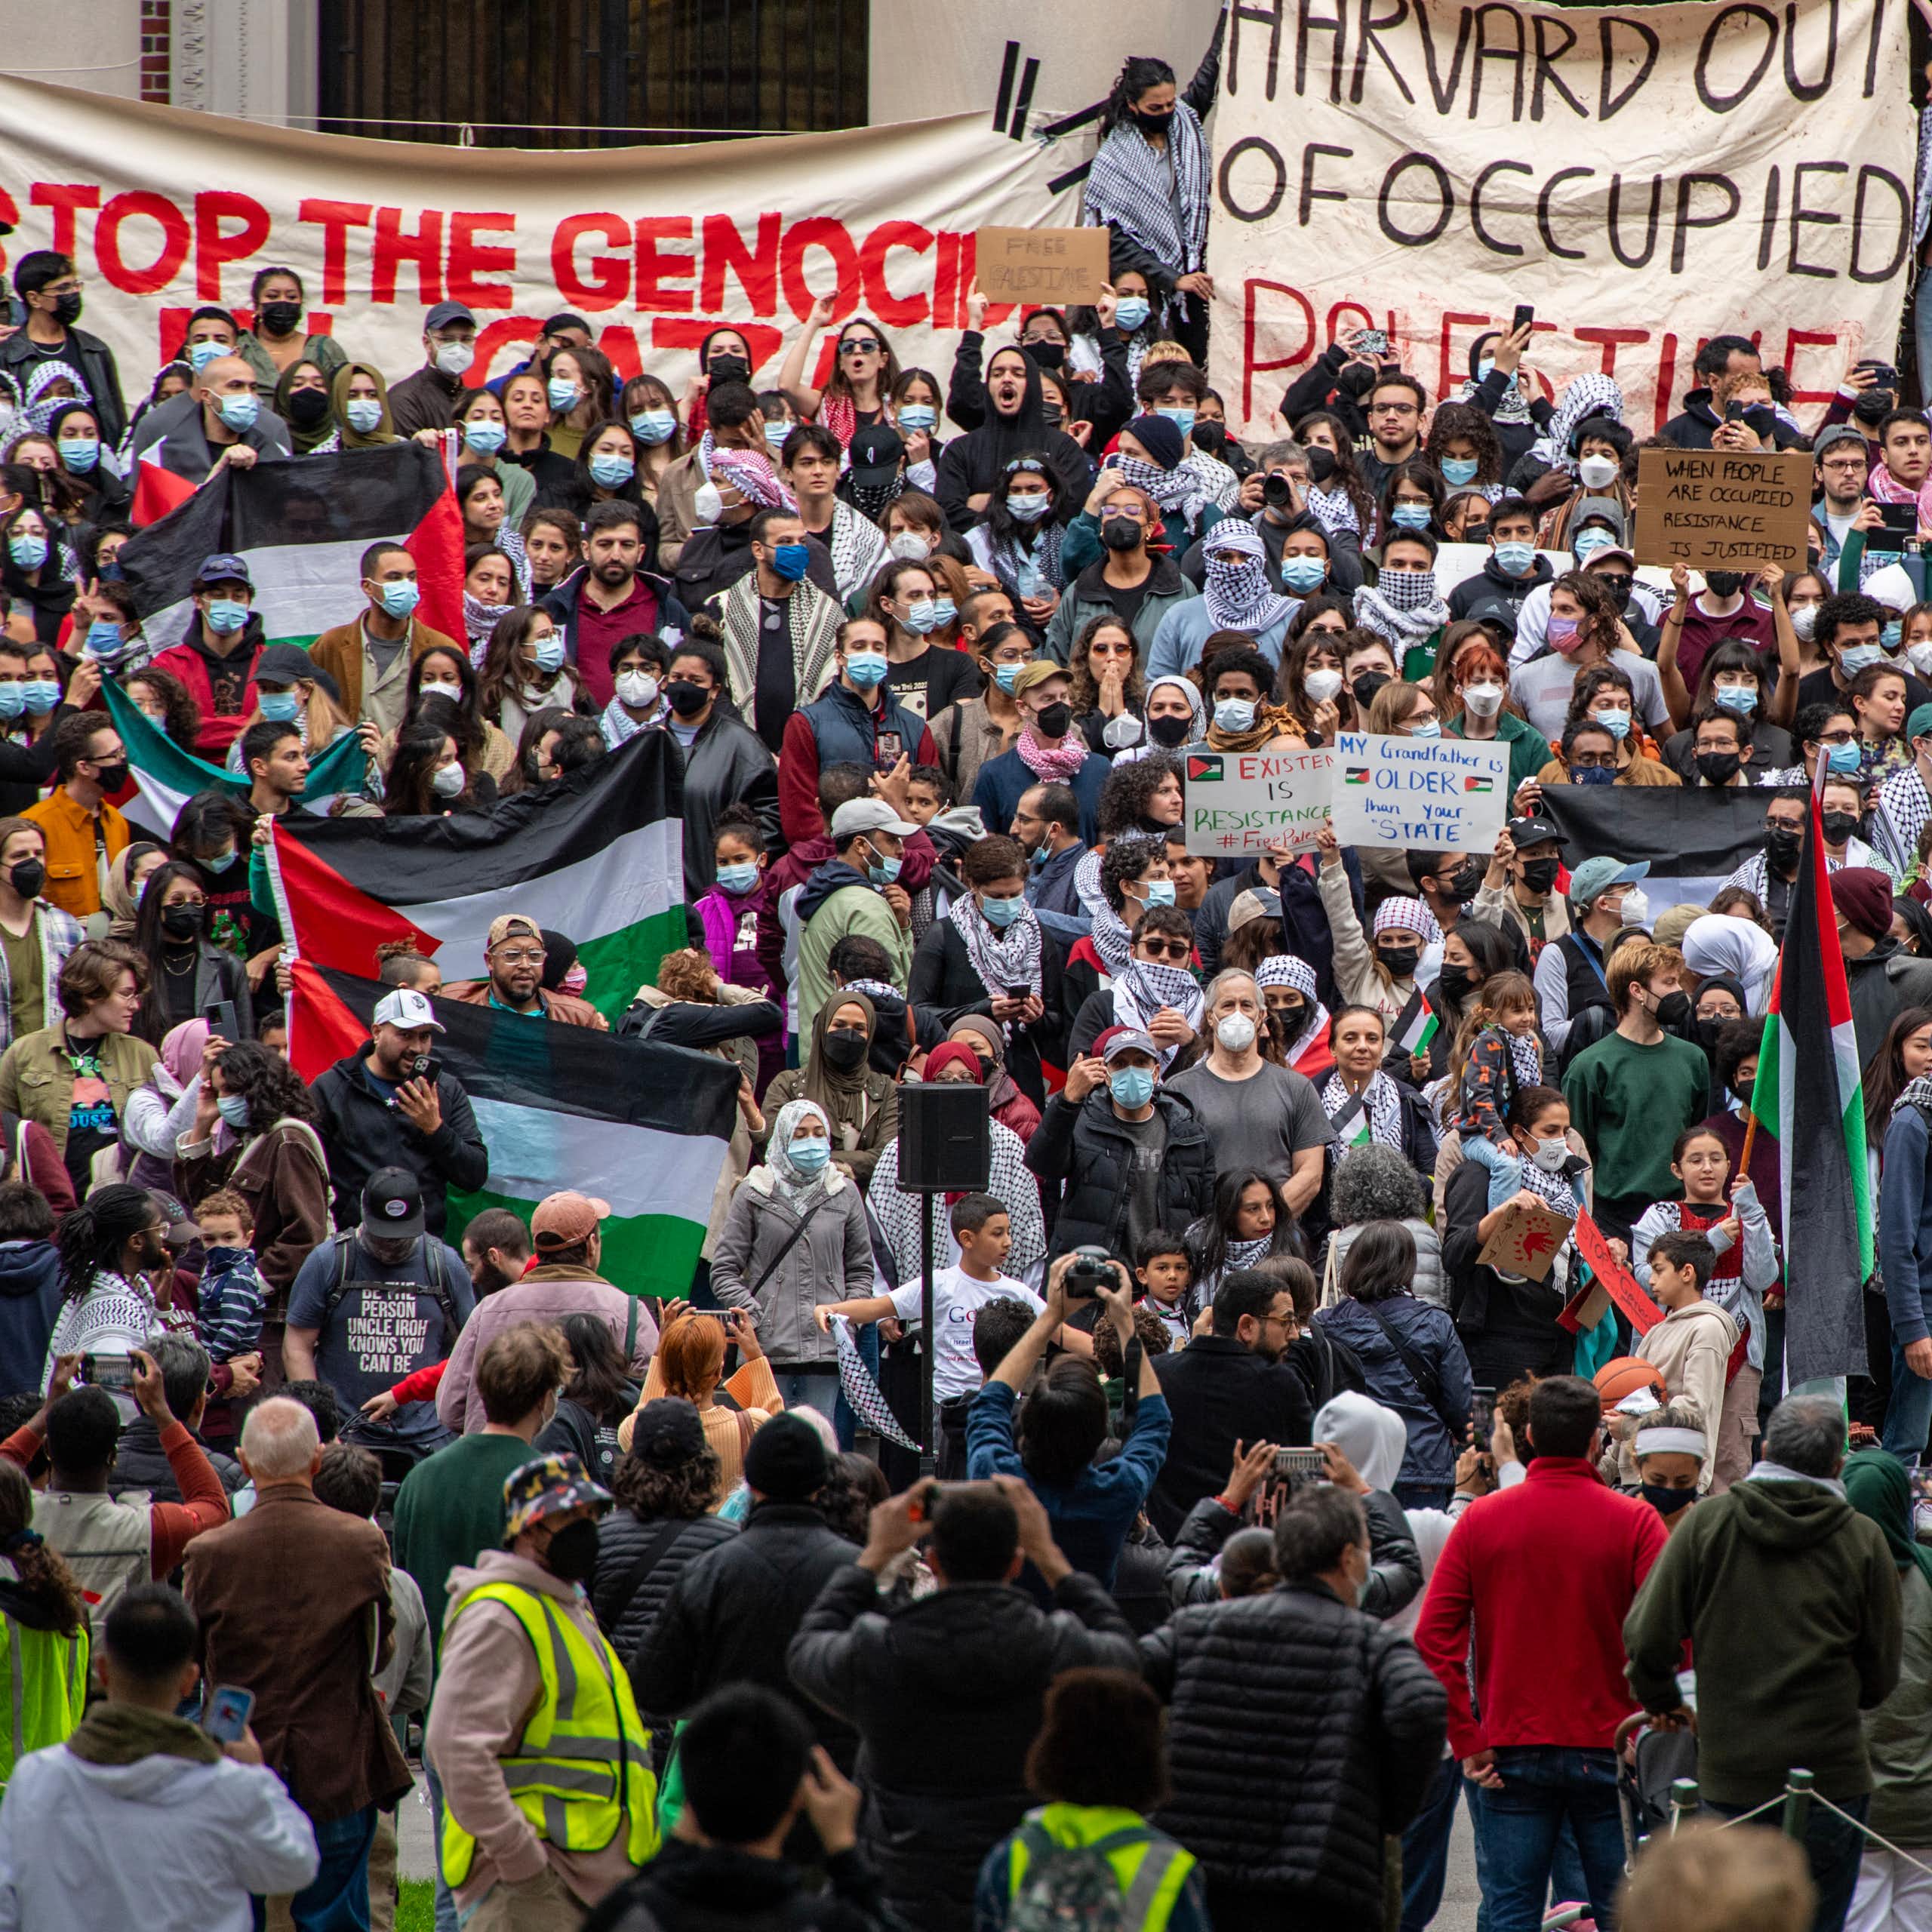 Foule brandissants drapeaux de la Palestine et banderoles « Stop the genocide, « Harvard out of occupied Palestine » et « Divest »